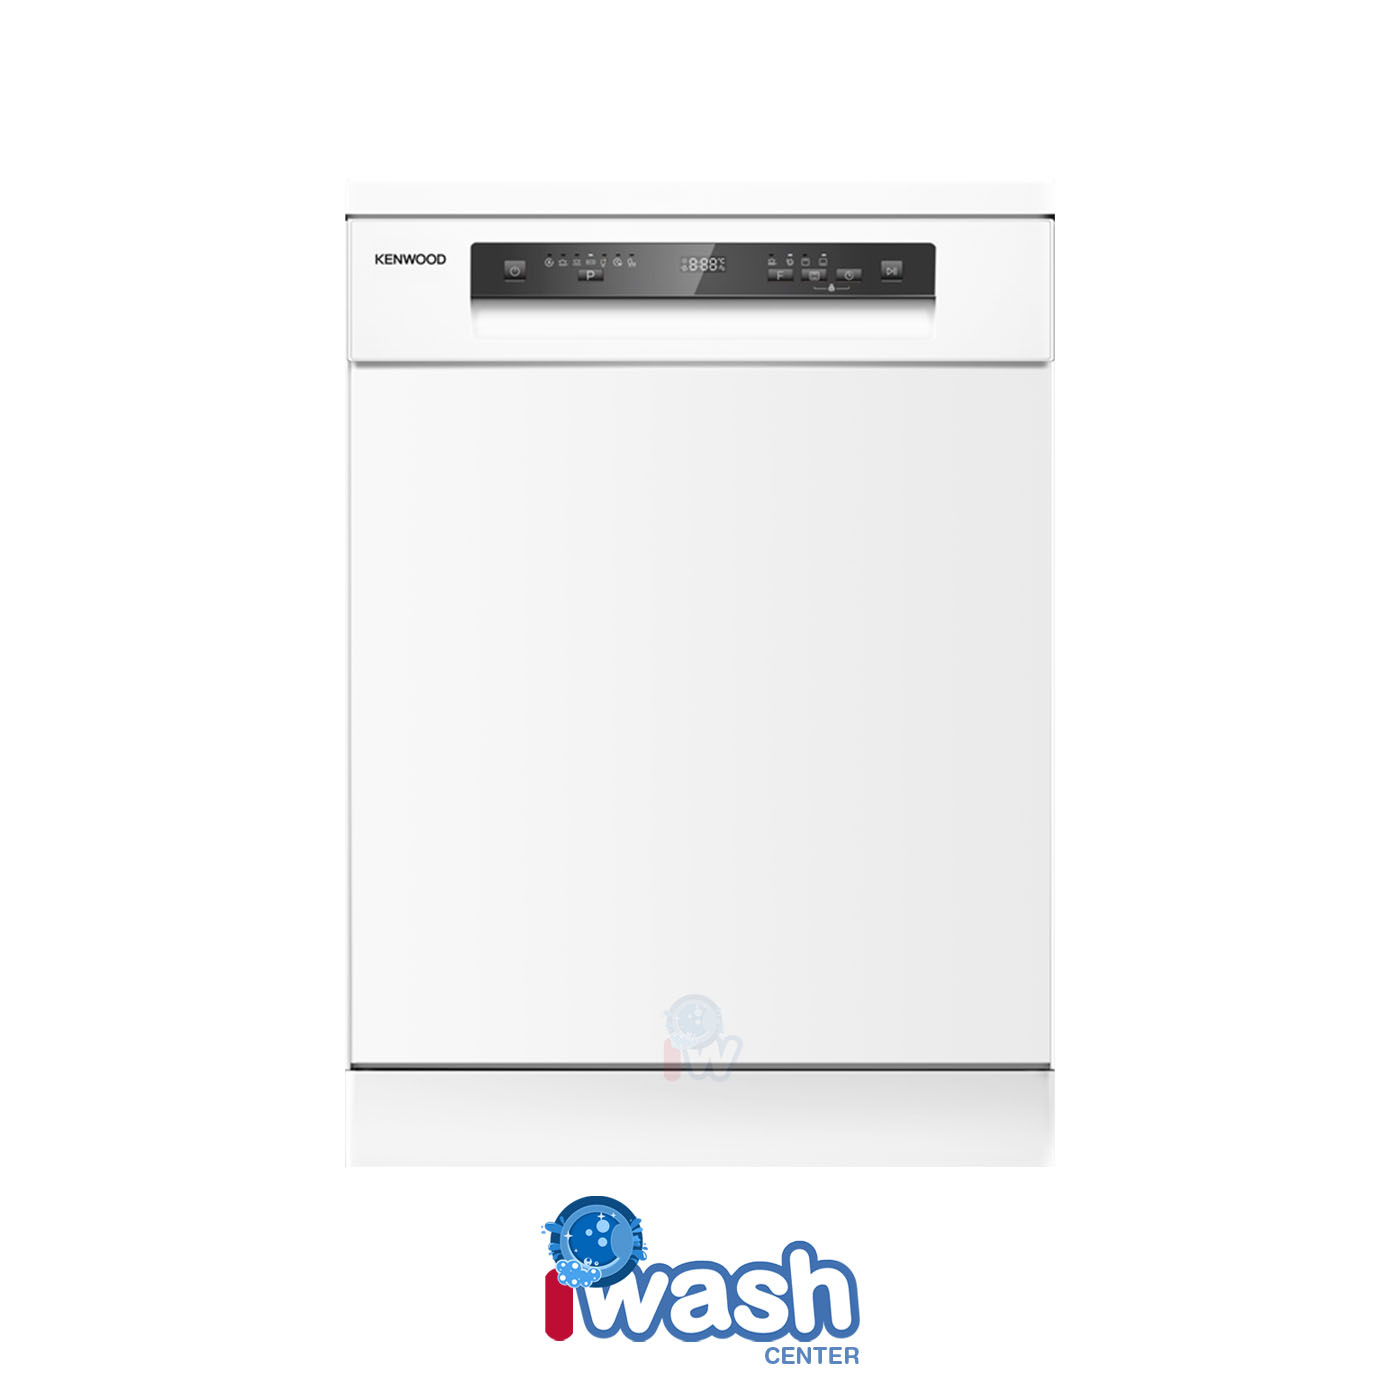 ماشین ظرفشویی 14 نفره کنوود مدل KDW-3140W سفید